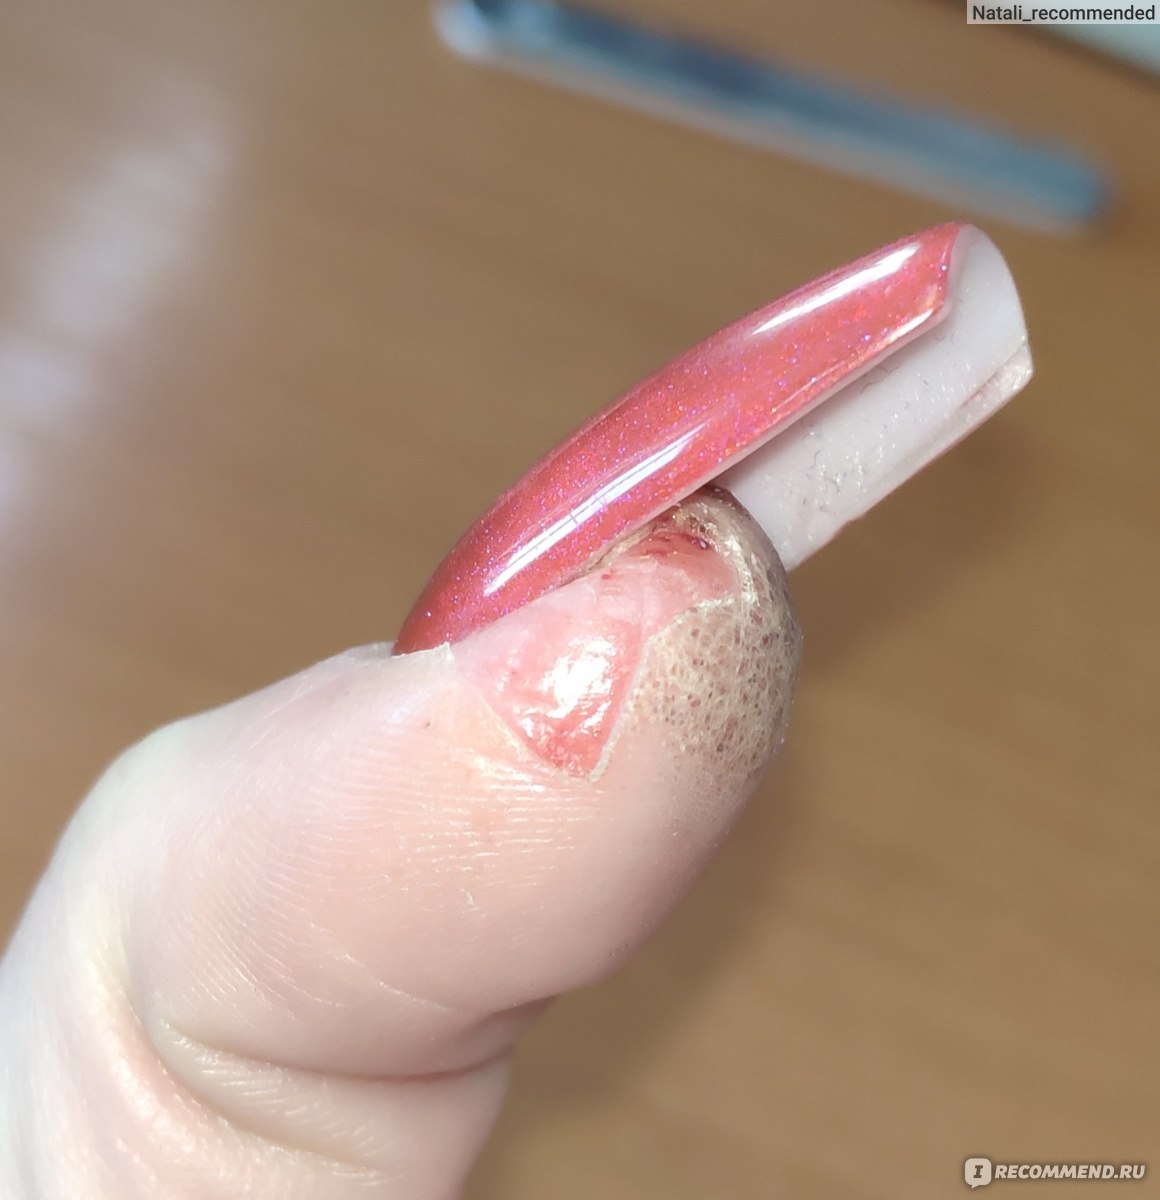 Как снять ногти максимально быстро и безопасно?